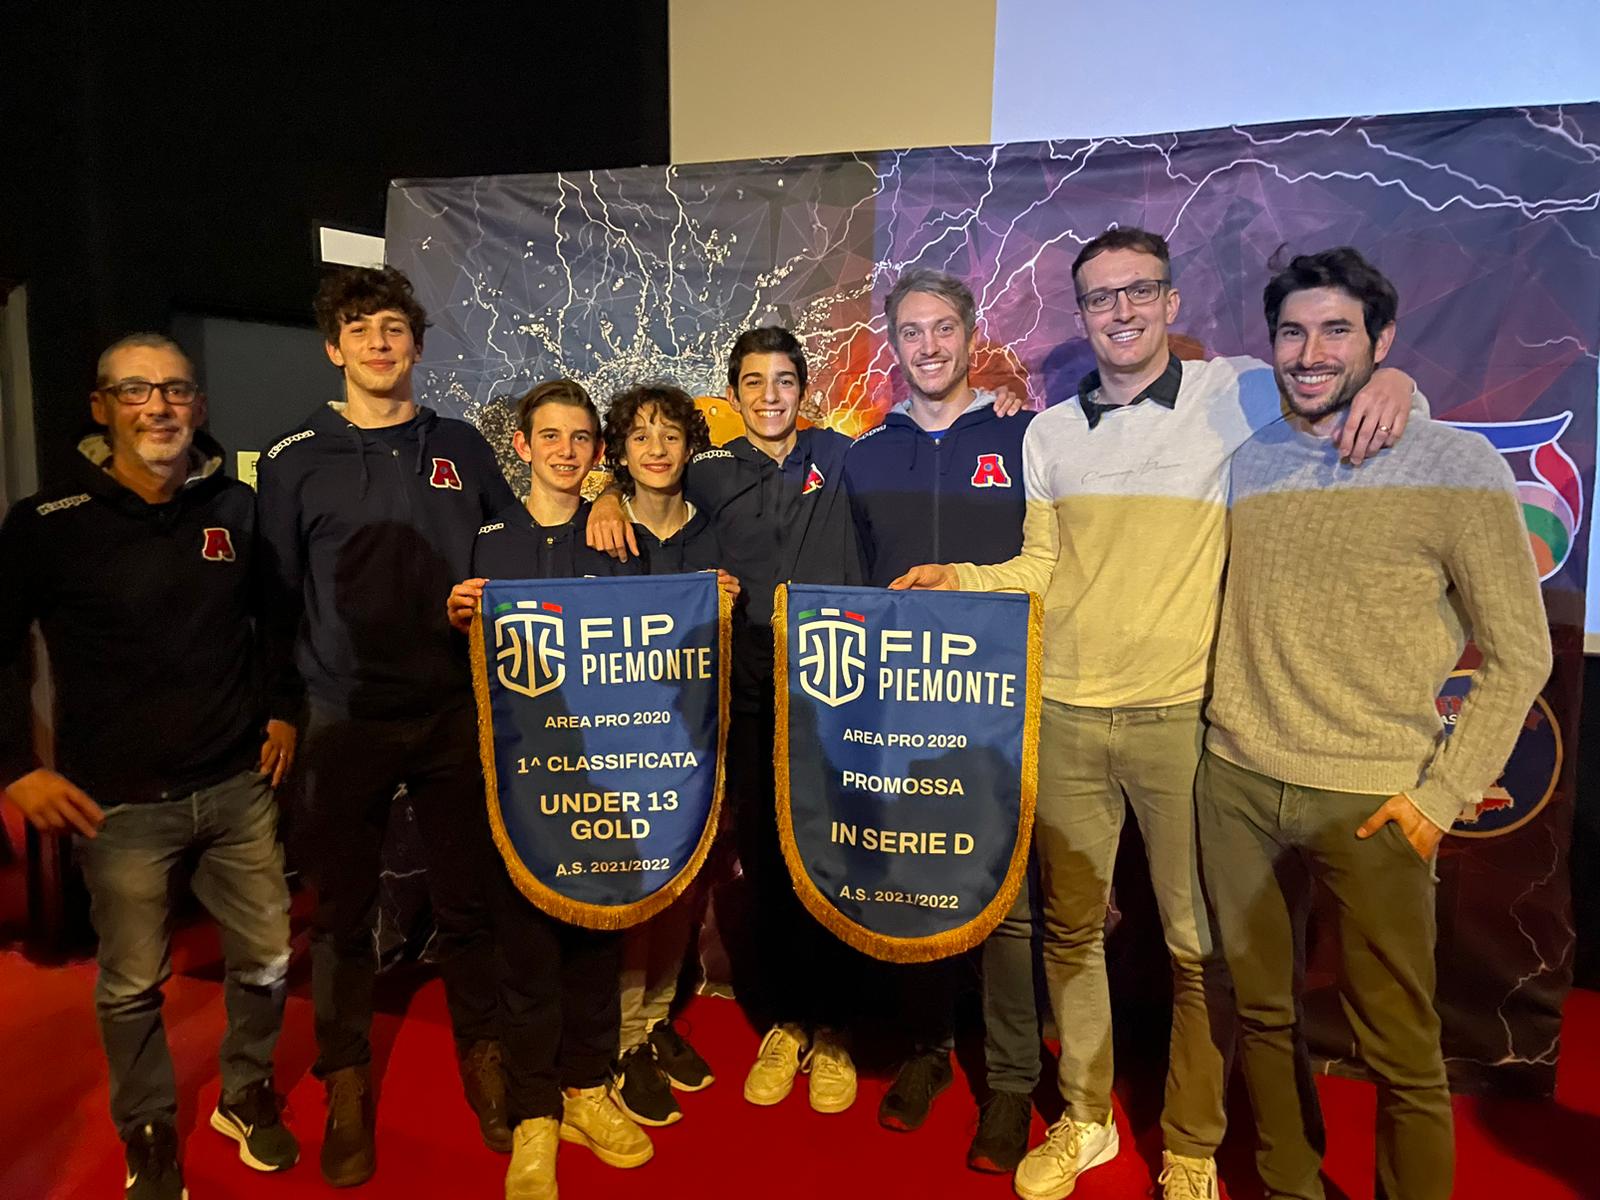 Premiazione FIP delle società vincenti titoli 2021-2022: per AP2020 under 13 Gold  e  Promozione in serie D